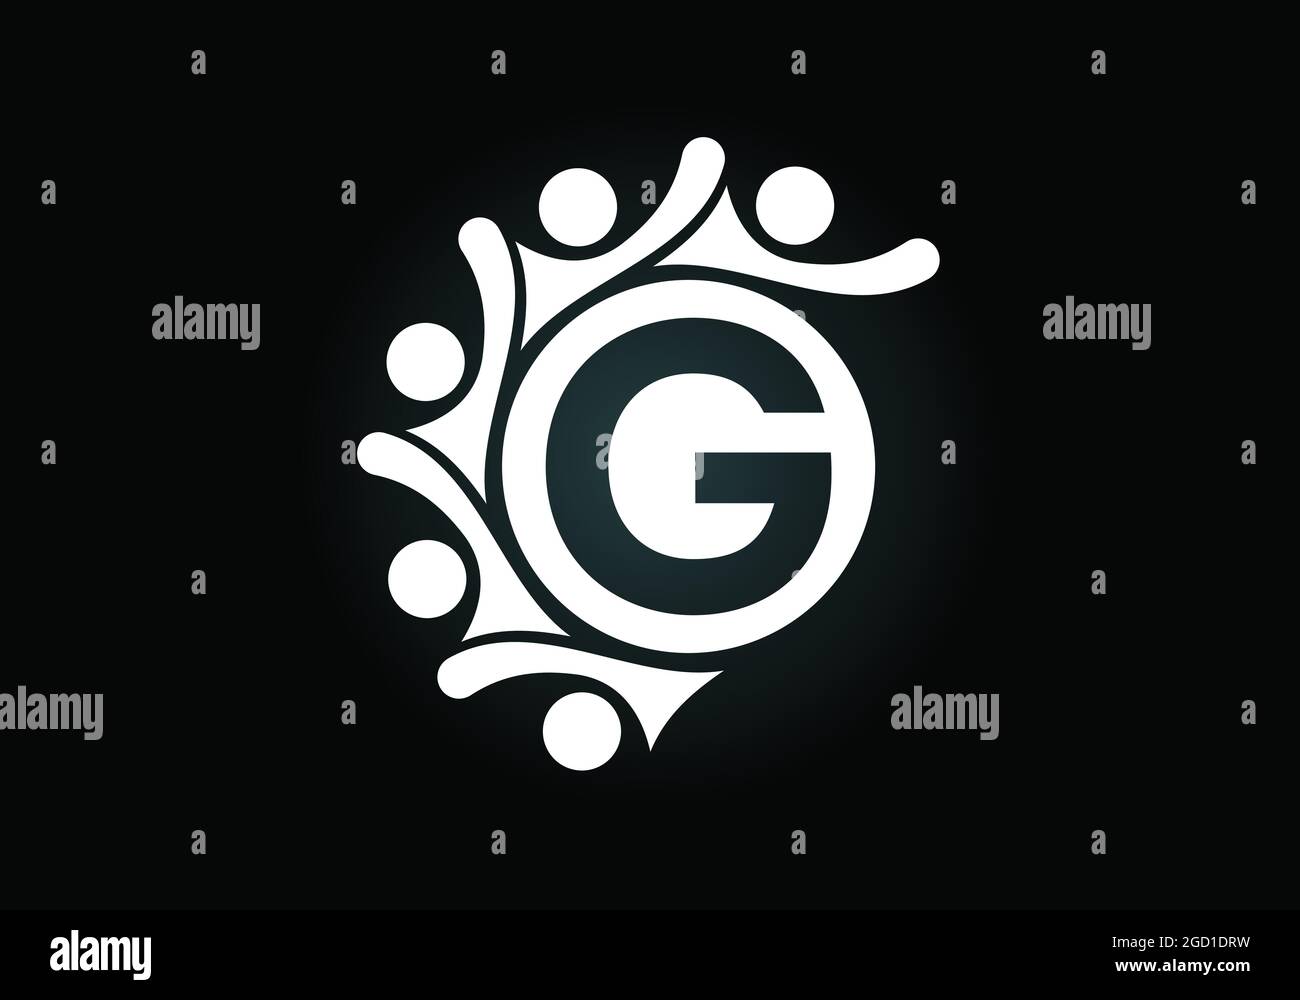 Anfängliches G-Monogramm-Alphabet mit der Verbindung von Menschen. Team, Zusammenarbeit Logo Zeichen Symbol. Schrift-Emblem. Logo für die Zusammenarbeit im Unternehmen Stock Vektor